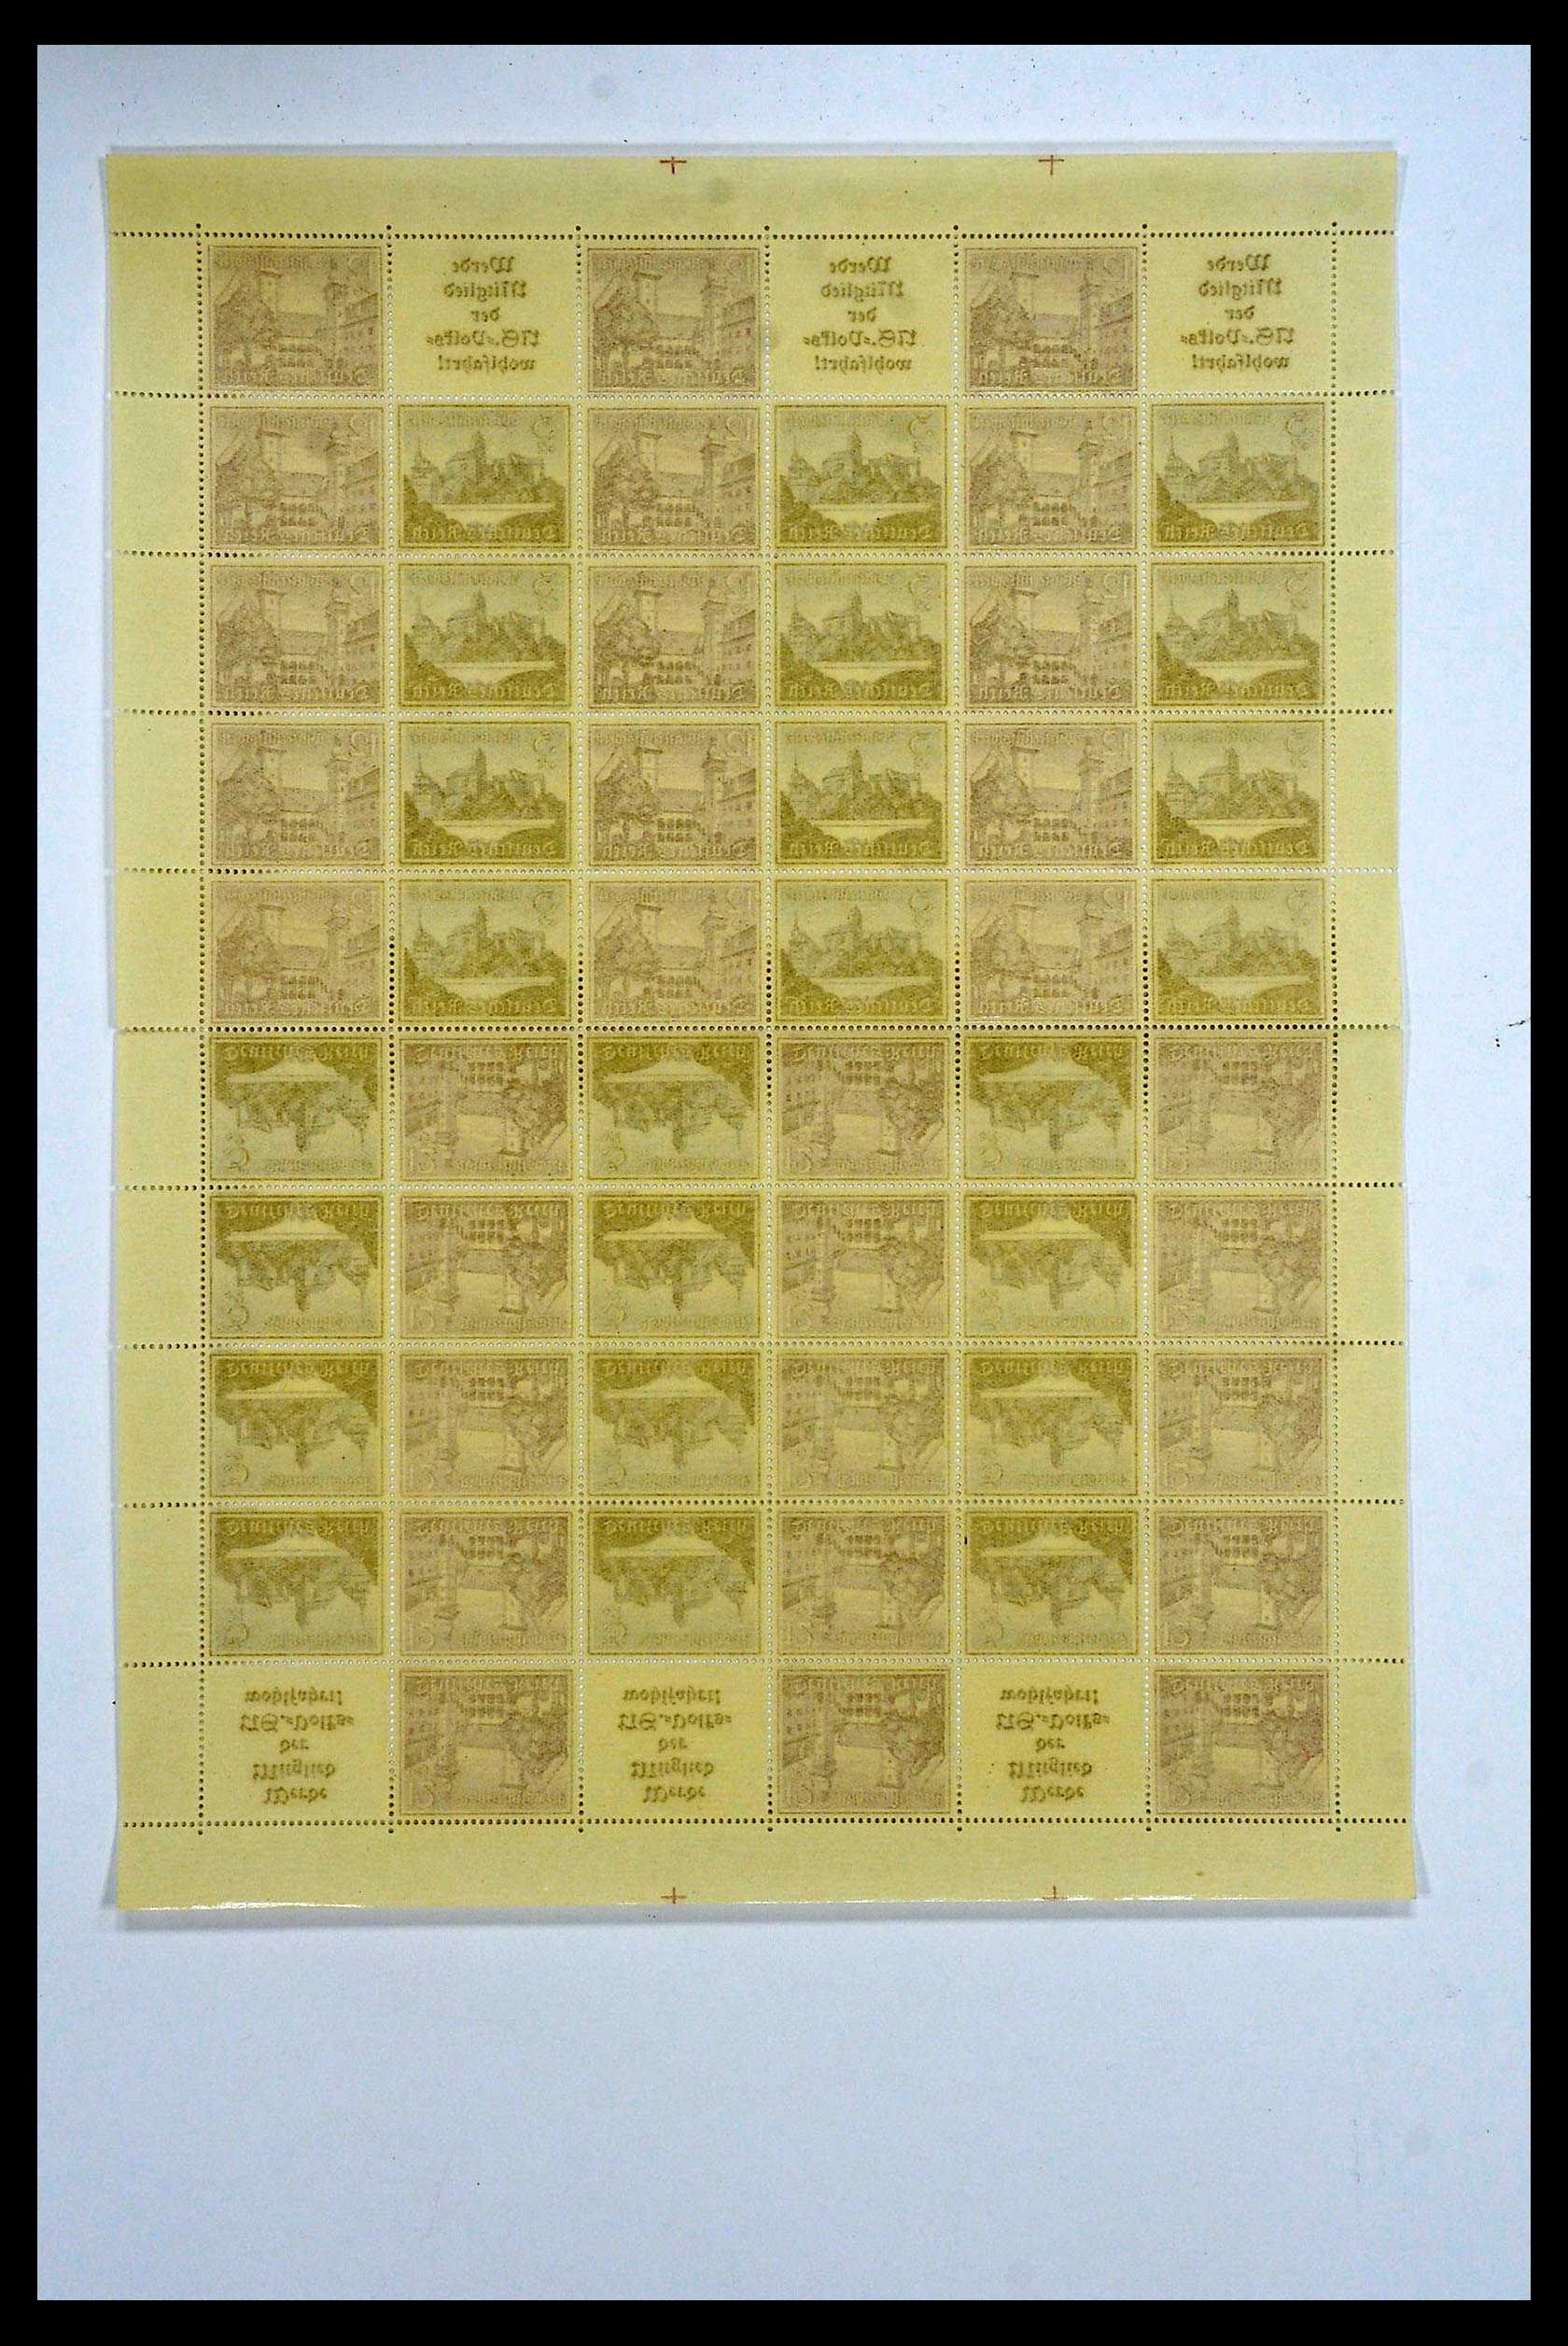 34164 069 - Stamp collection 34164 German Reich Markenheftchenbogen 1933-1942.